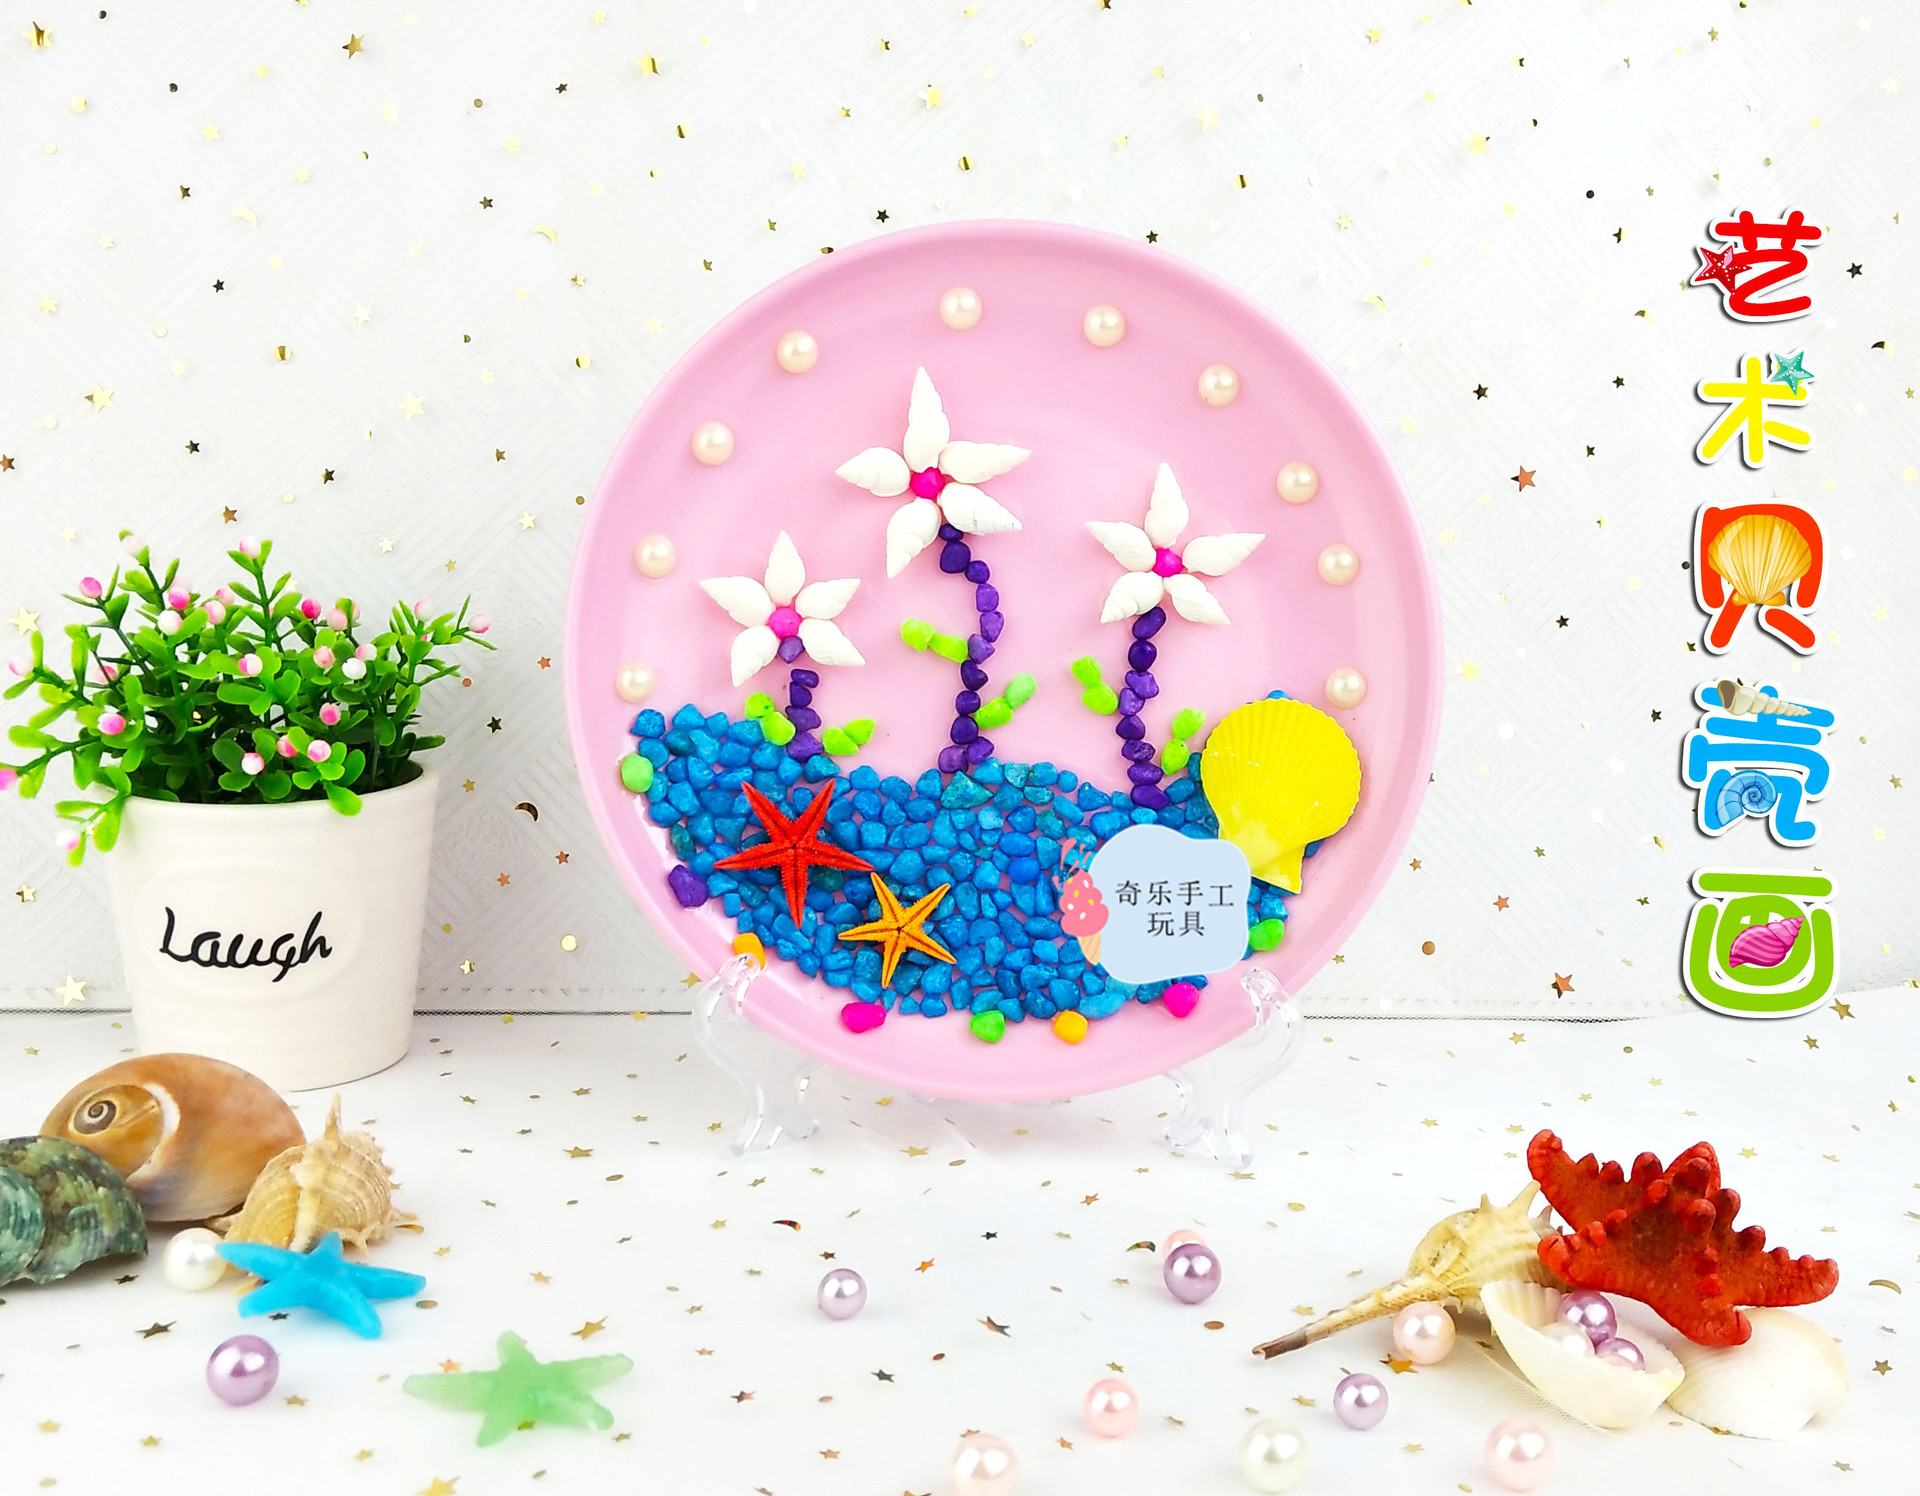 新款手工diy贝壳海螺海沙贴画制作材料包 幼儿创意粘贴圆盘画礼物-阿里巴巴